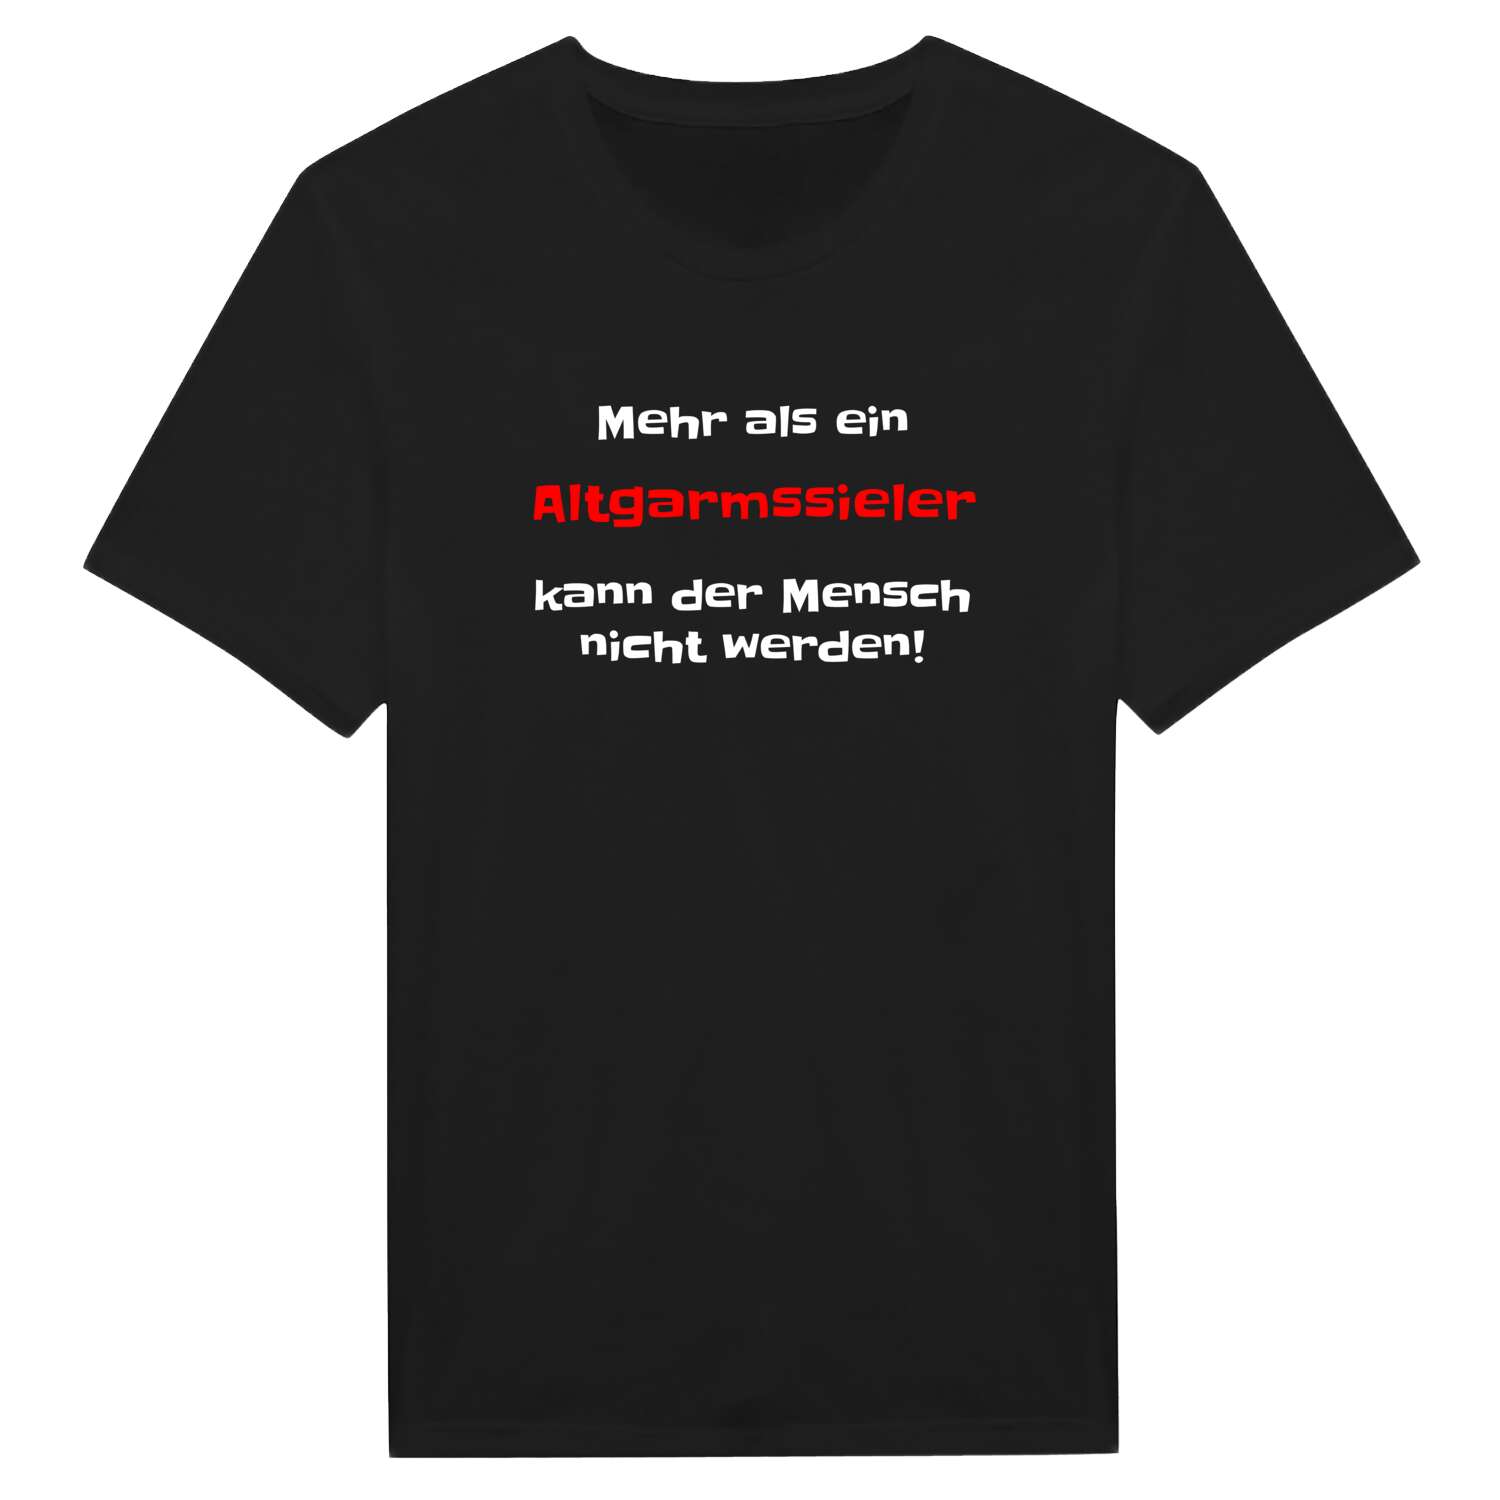 Altgarmssiel T-Shirt »Mehr als ein«